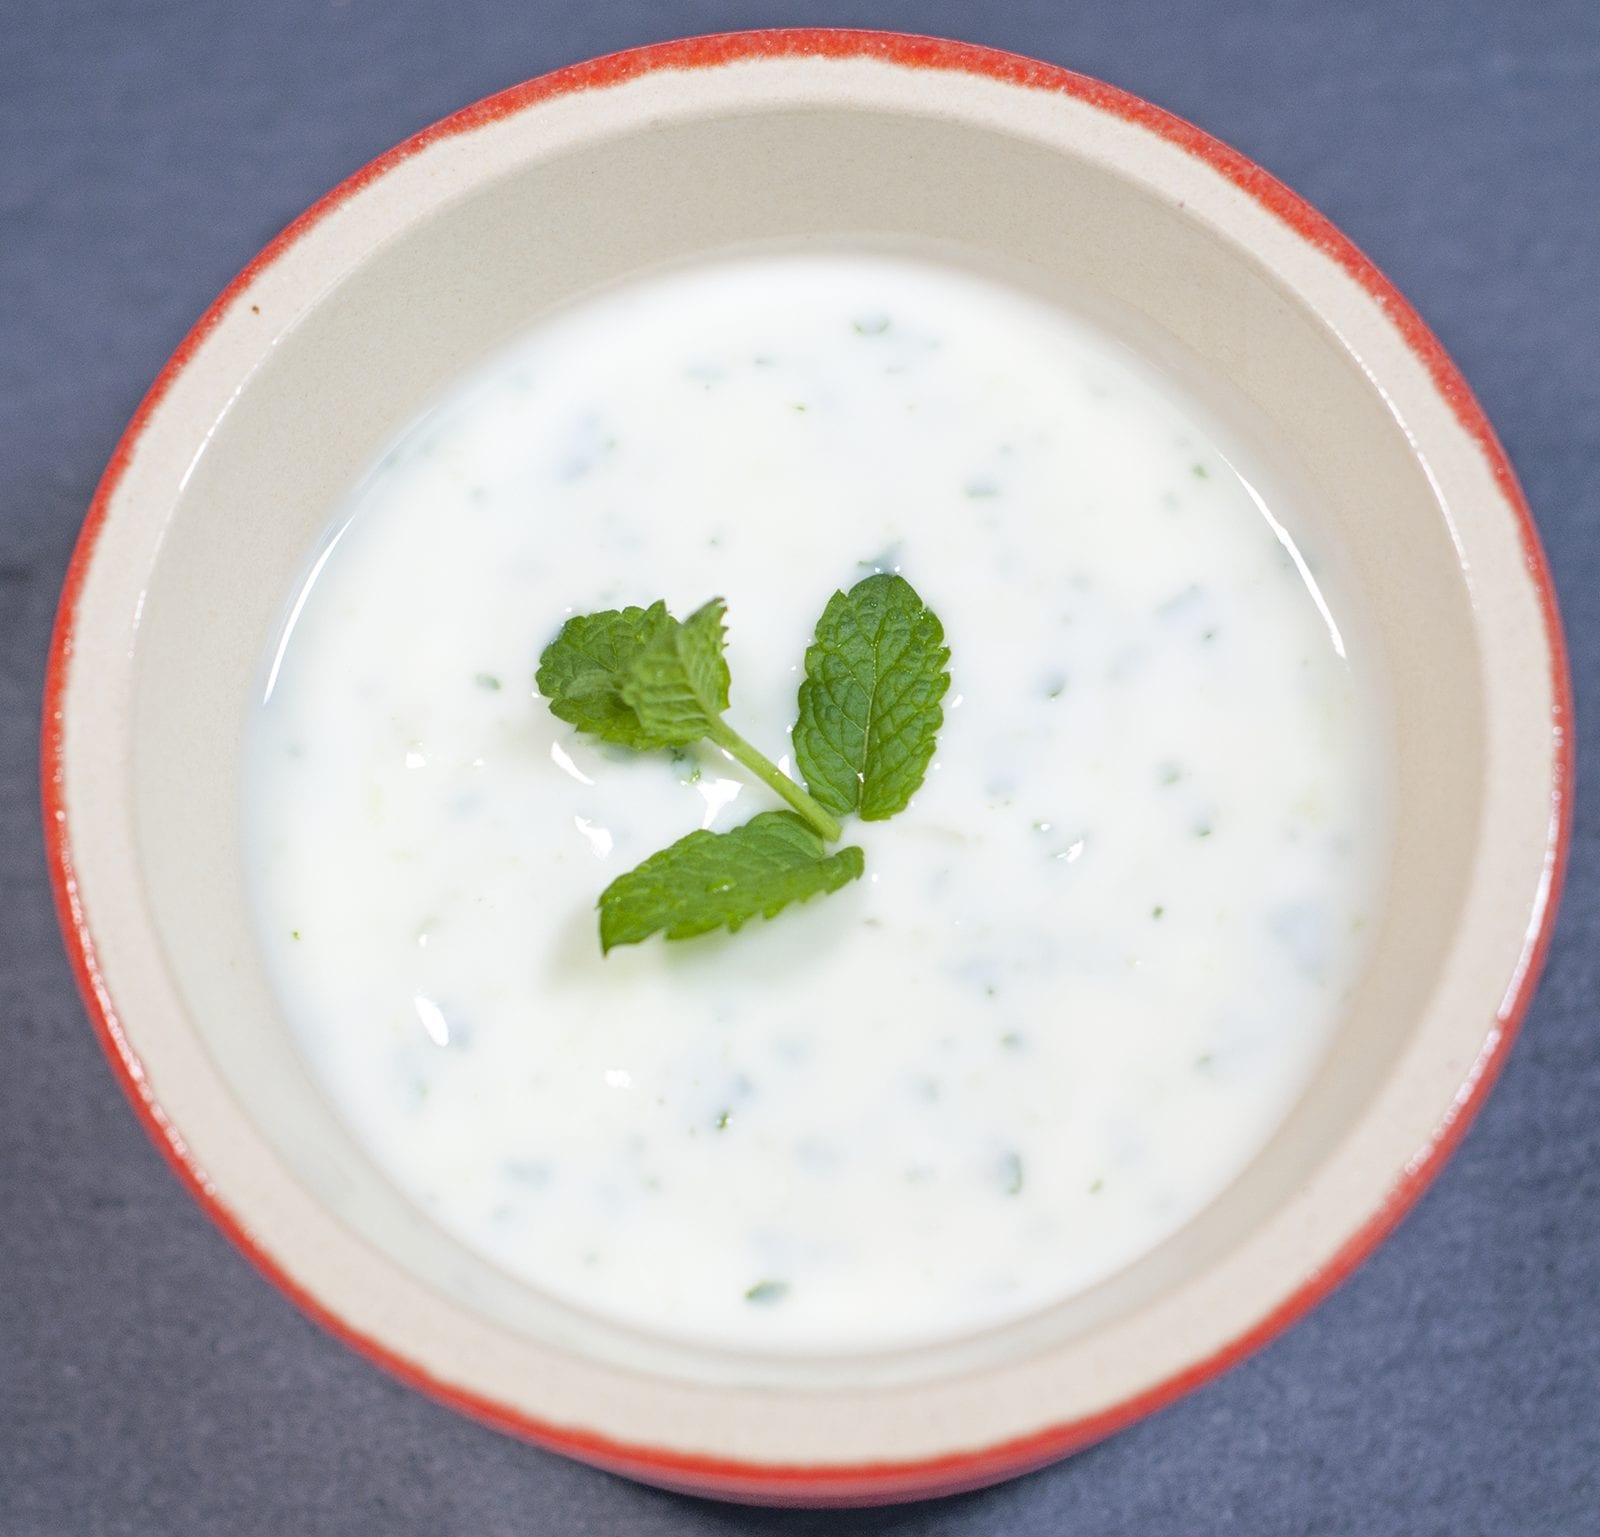 Aromatic tandoori chicken tikka style. Mint yogurt | https://theyumyumclub.com/2019/05/01/chicken-tandoori-tikka-style/